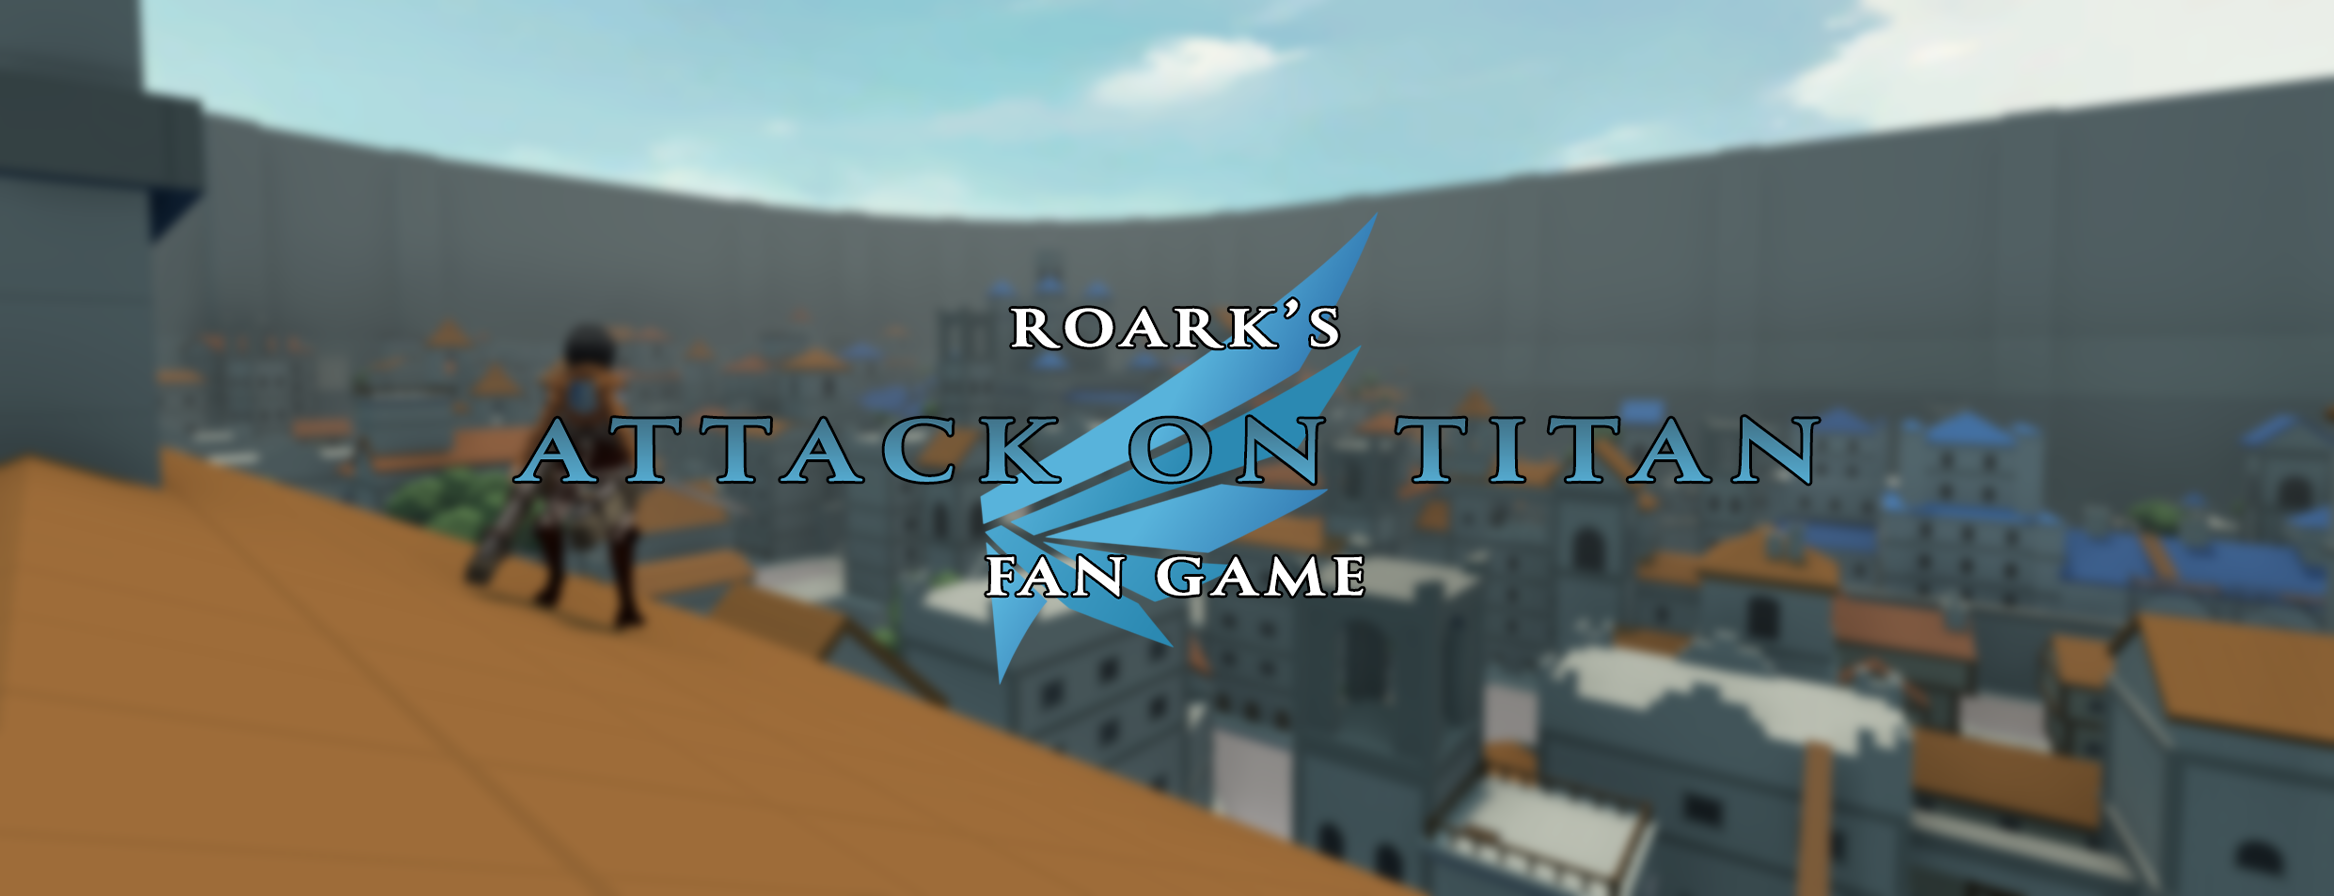 Roarks Attack on Titan Fan Game